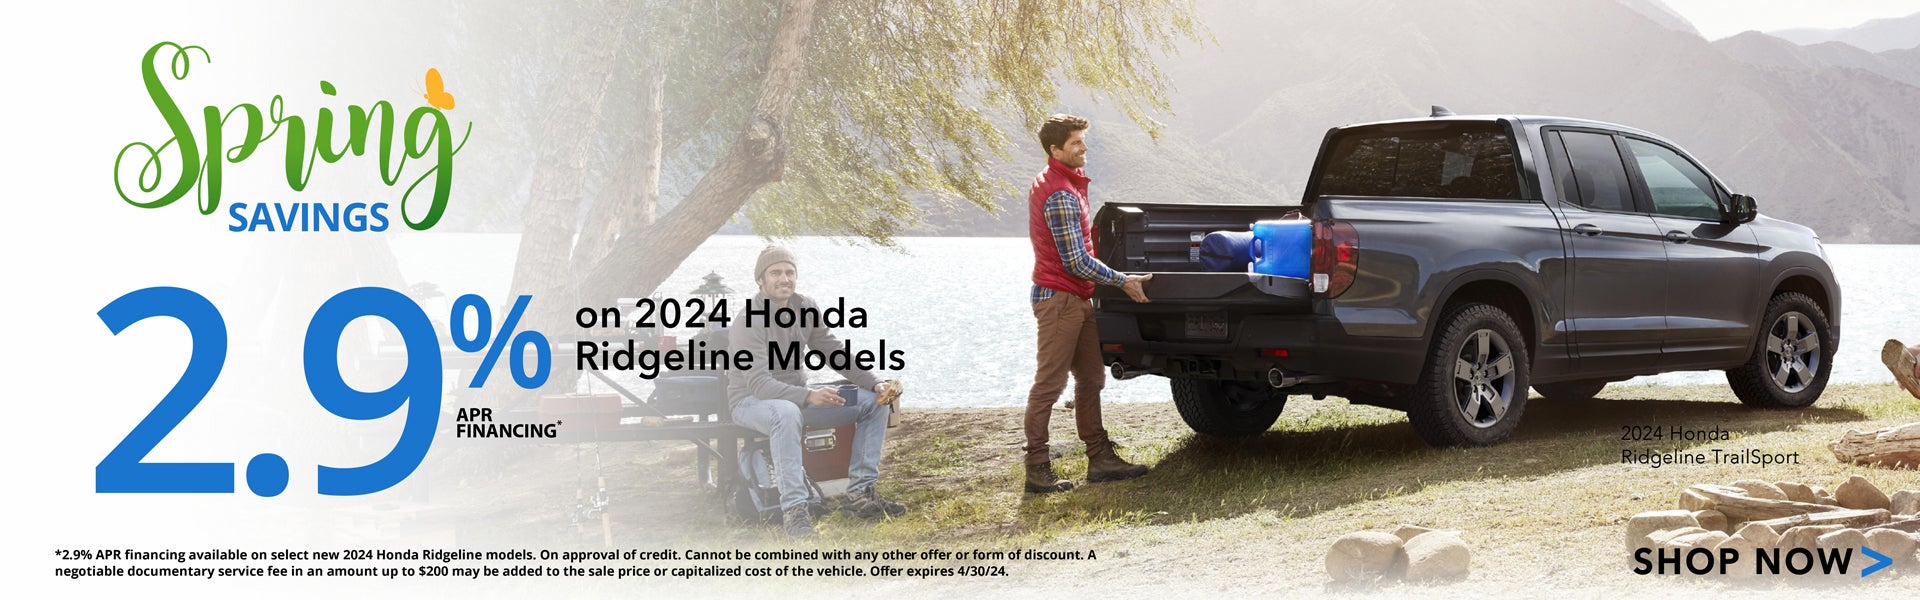 2.9% on 2024 Honda Ridgeline Models